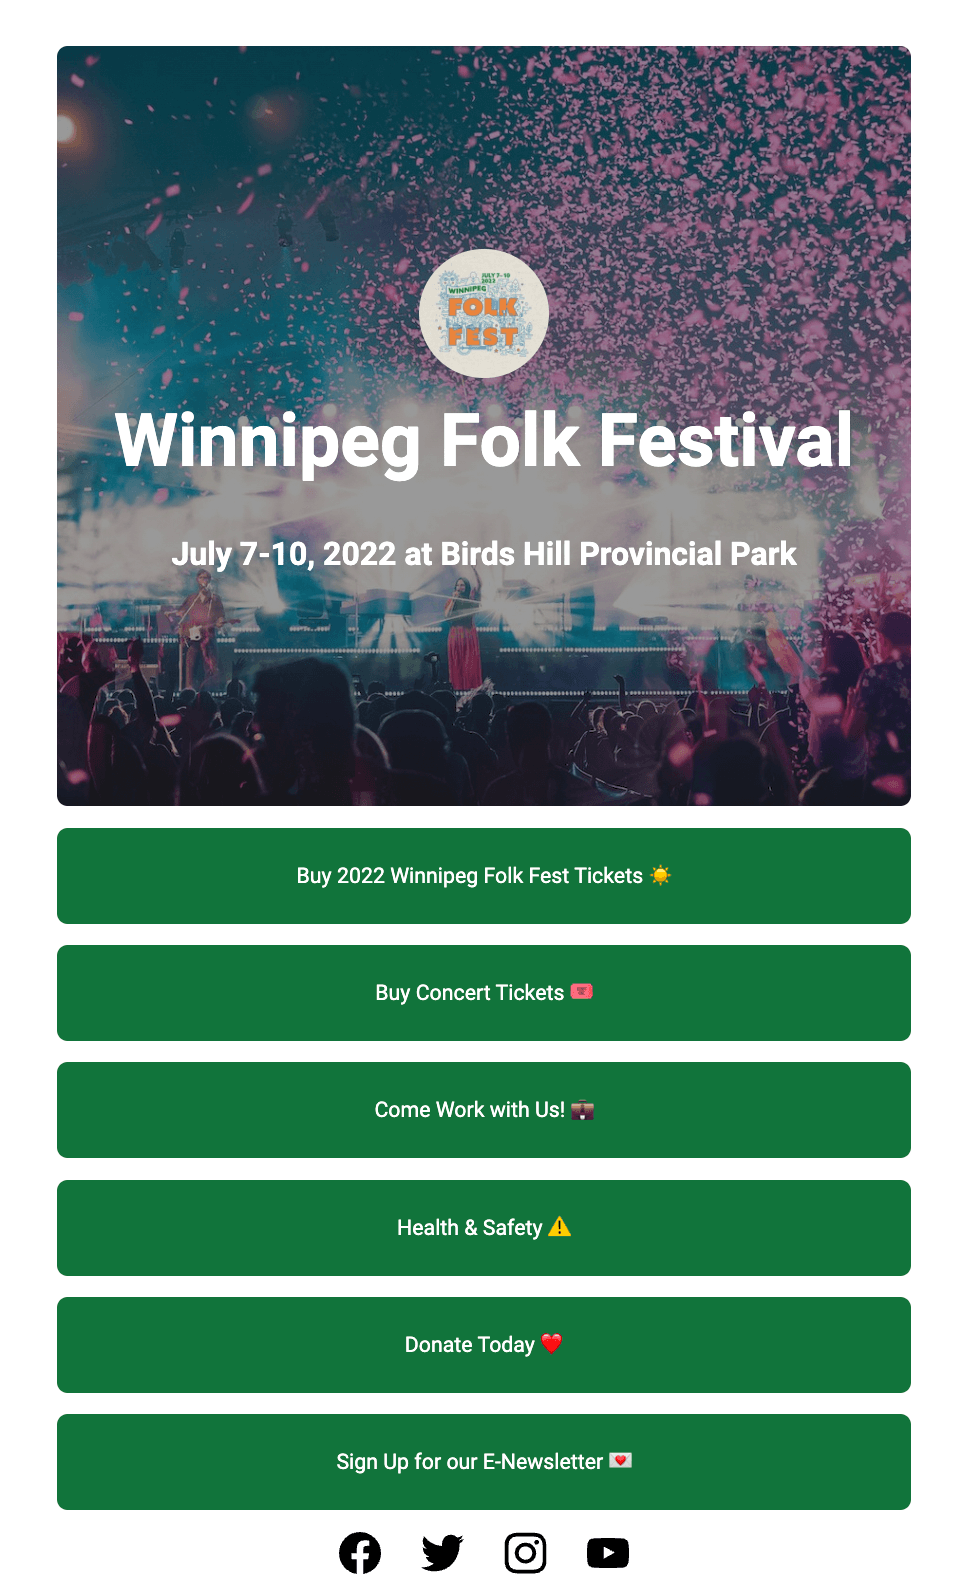 Winnipeg Folk Festival's Start Page